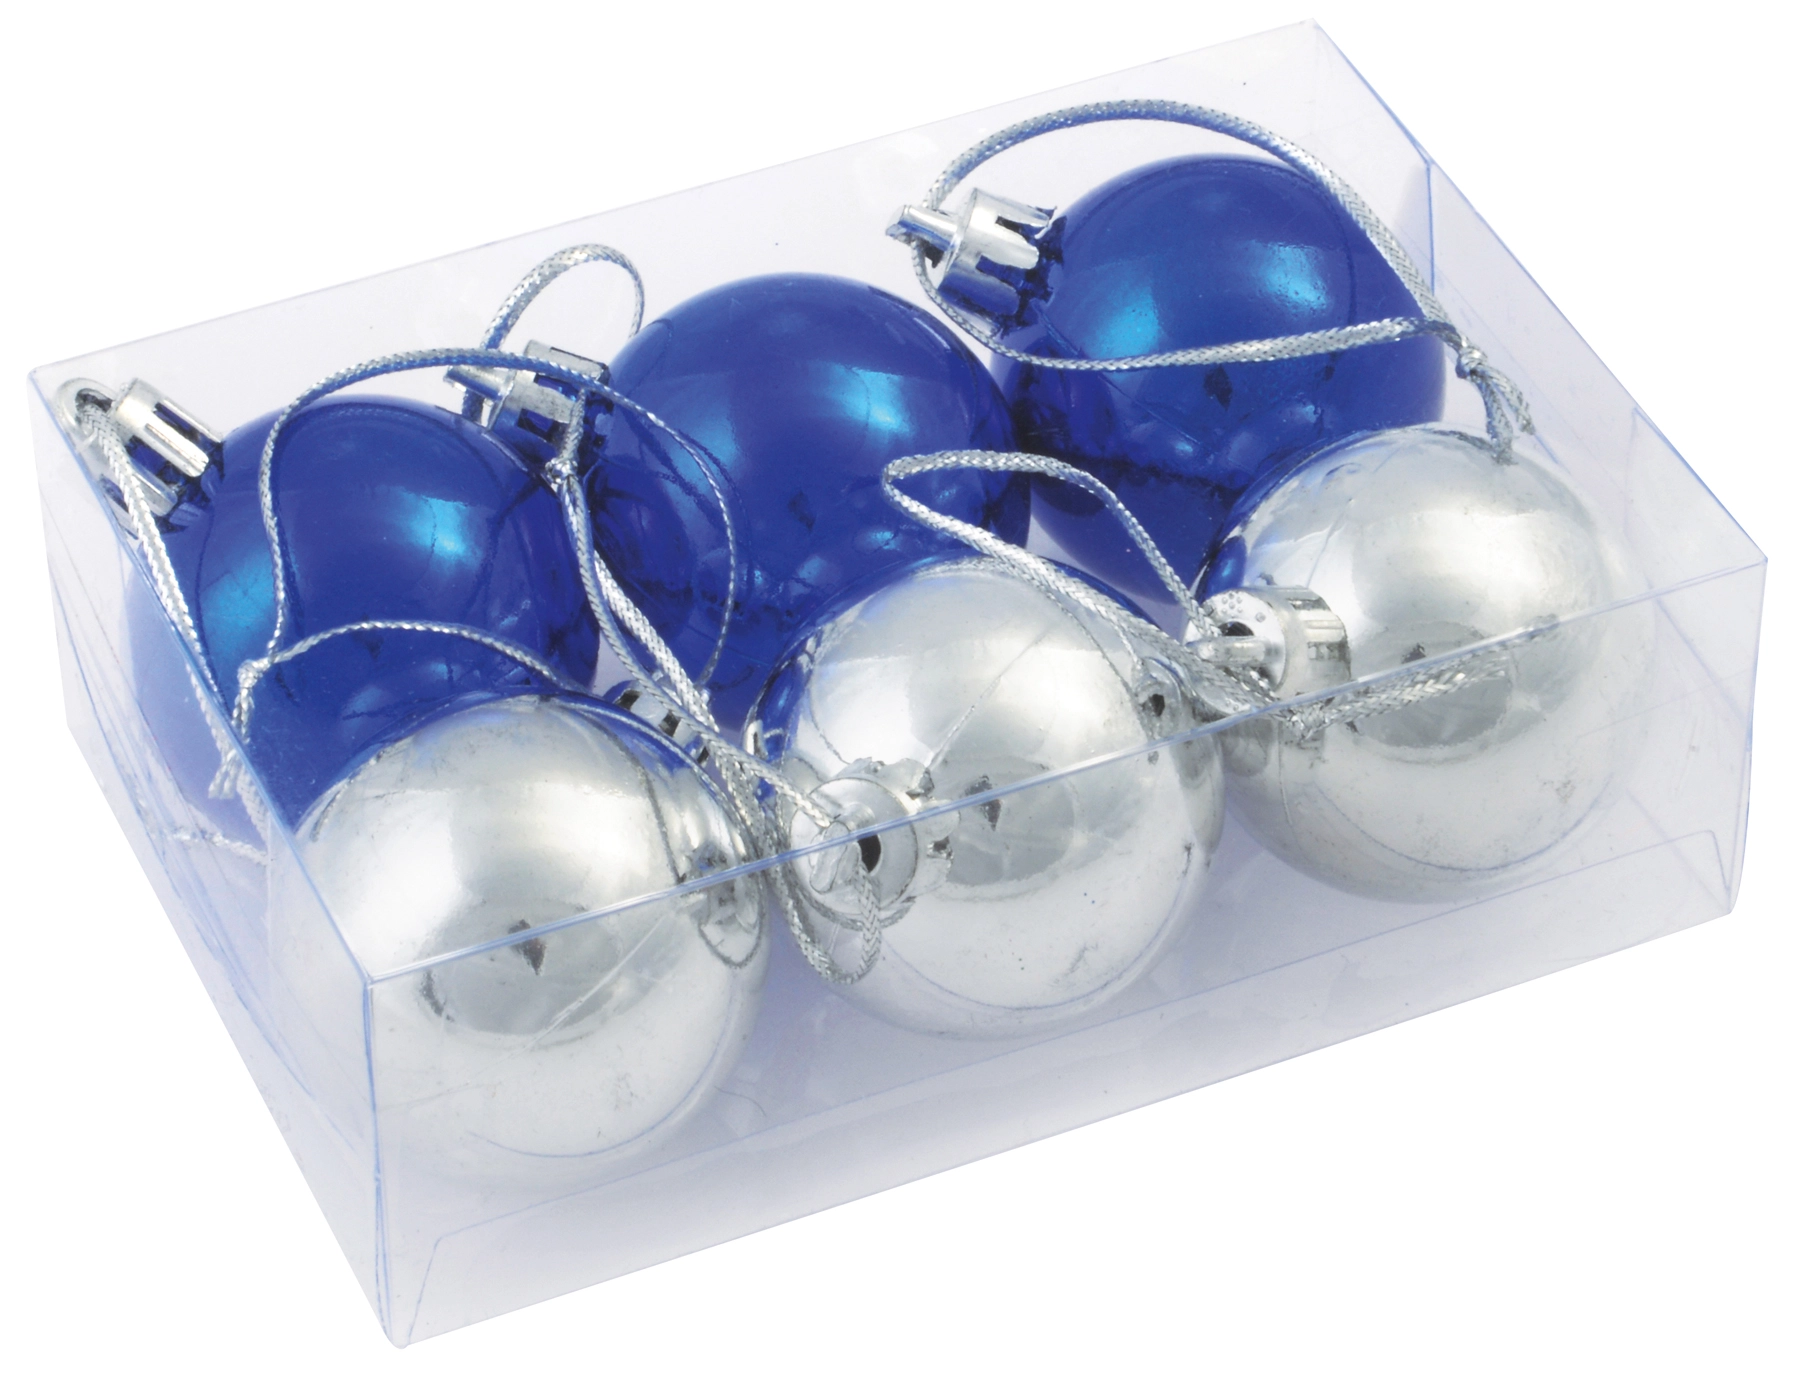 Ozdoby świąteczne XMAS LINE, niebieski, srebrny 56-0905021